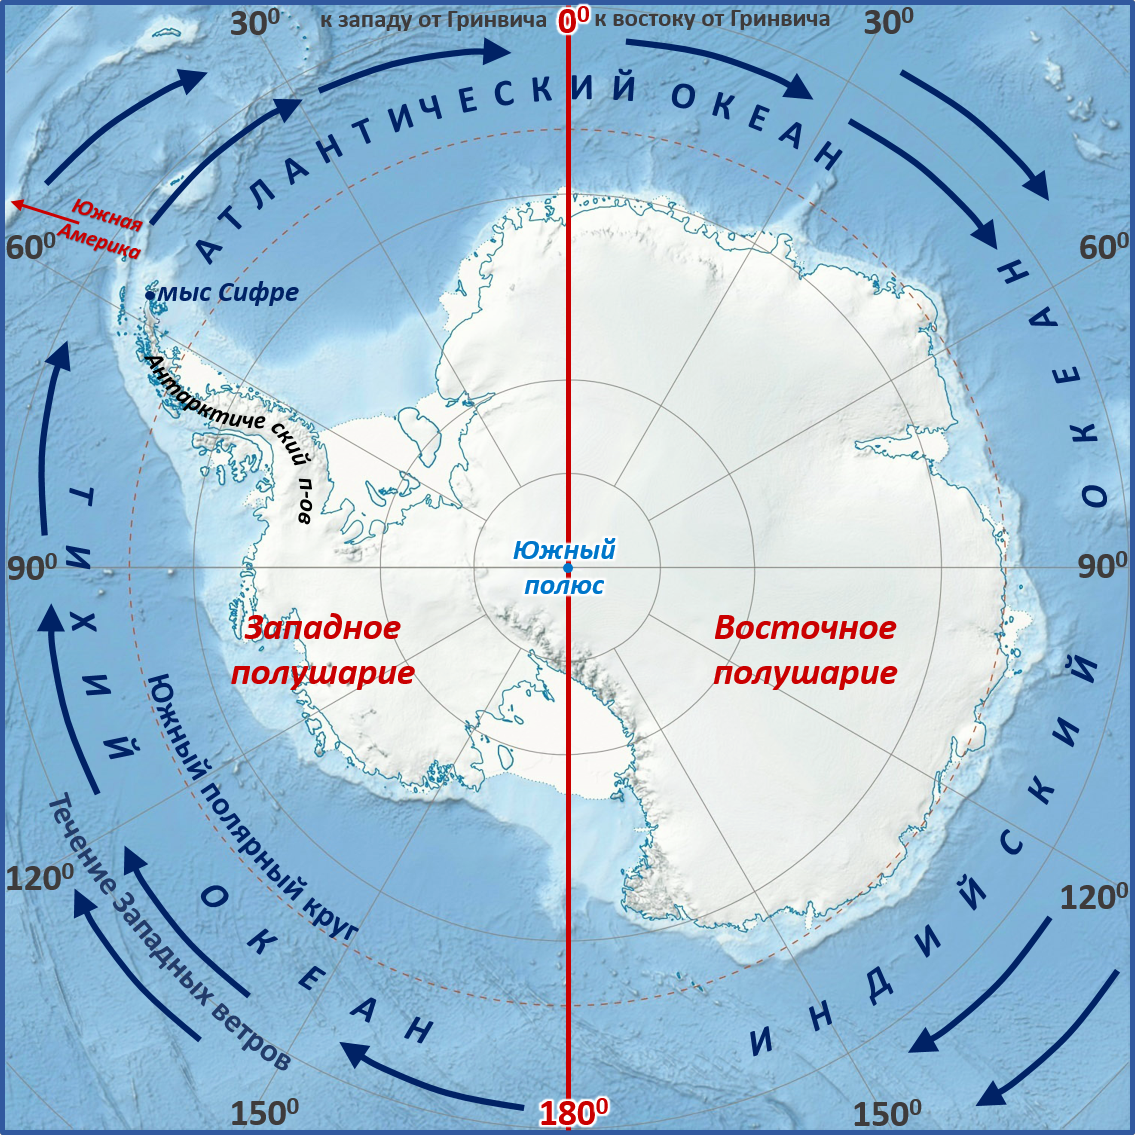 Тихий океан полярные круги. Мыс Сифре на карте Антарктиды. Моря: Амундсена, Беллинсгаузена, Росса, Уэдделла.. Мыс Сифре Антарктида. Южный полюс на карте Антарктиды.